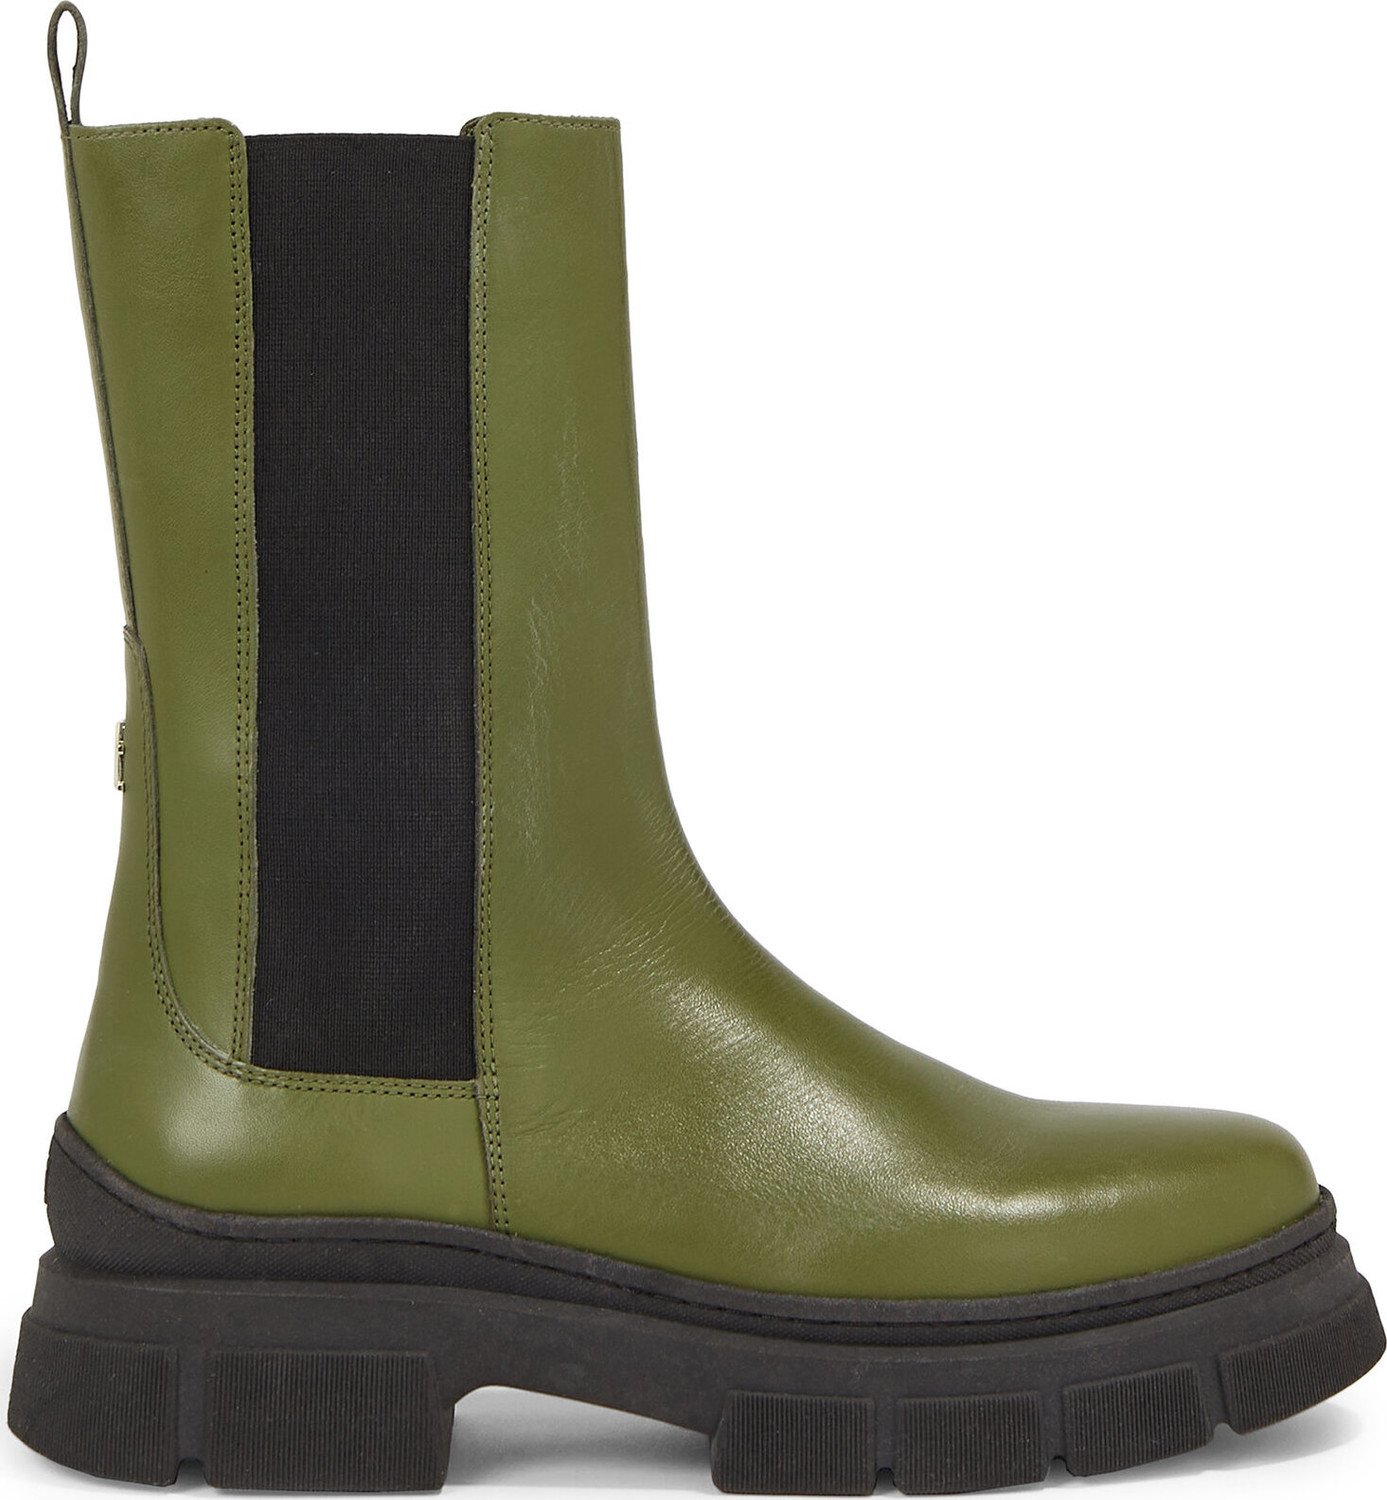 Kotníková obuv s elastickým prvkem Tommy Hilfiger Essential Leather Chelsea Boot FW0FW07490 Putting Green MS2